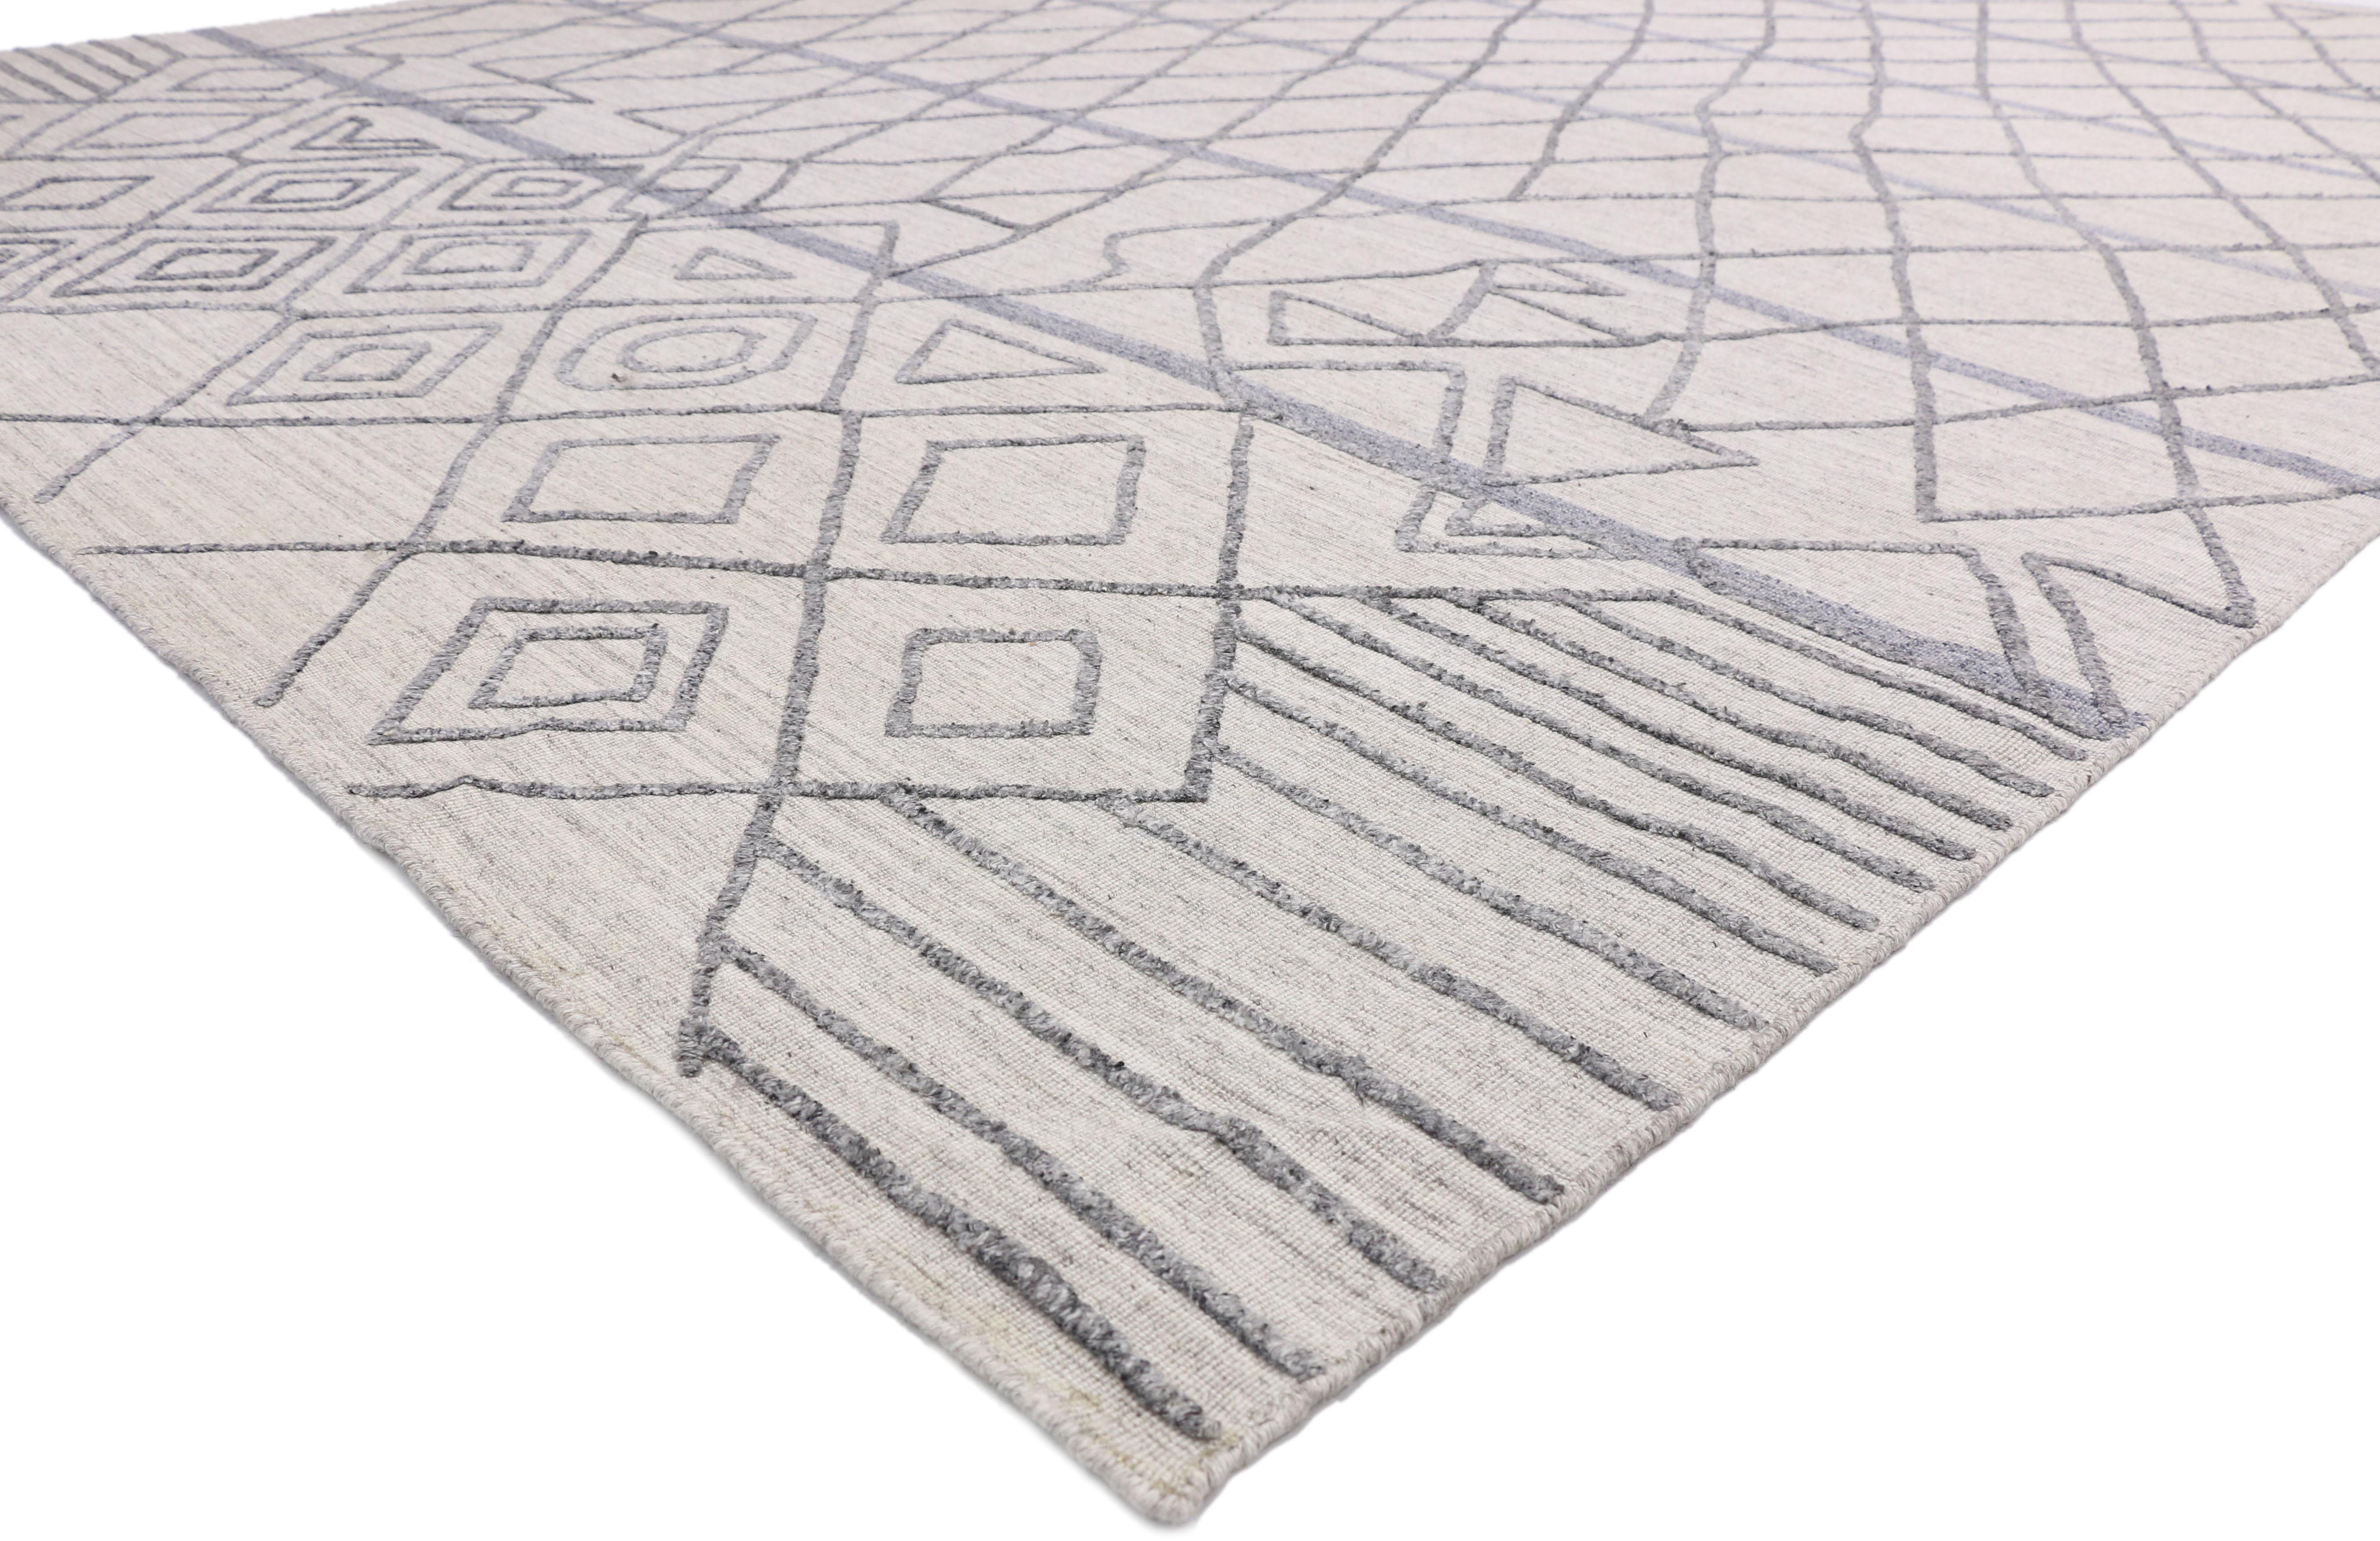 30421, New Contemporary Rug with Modern Moroccan Style, Texture Area Rug with raised design. Dieser zeitgenössische Teppich im marokkanischen Stil vereint warme Gemütlichkeit mit Stammesmotiven. Dieser marokkanische Teppich ist eine dynamische